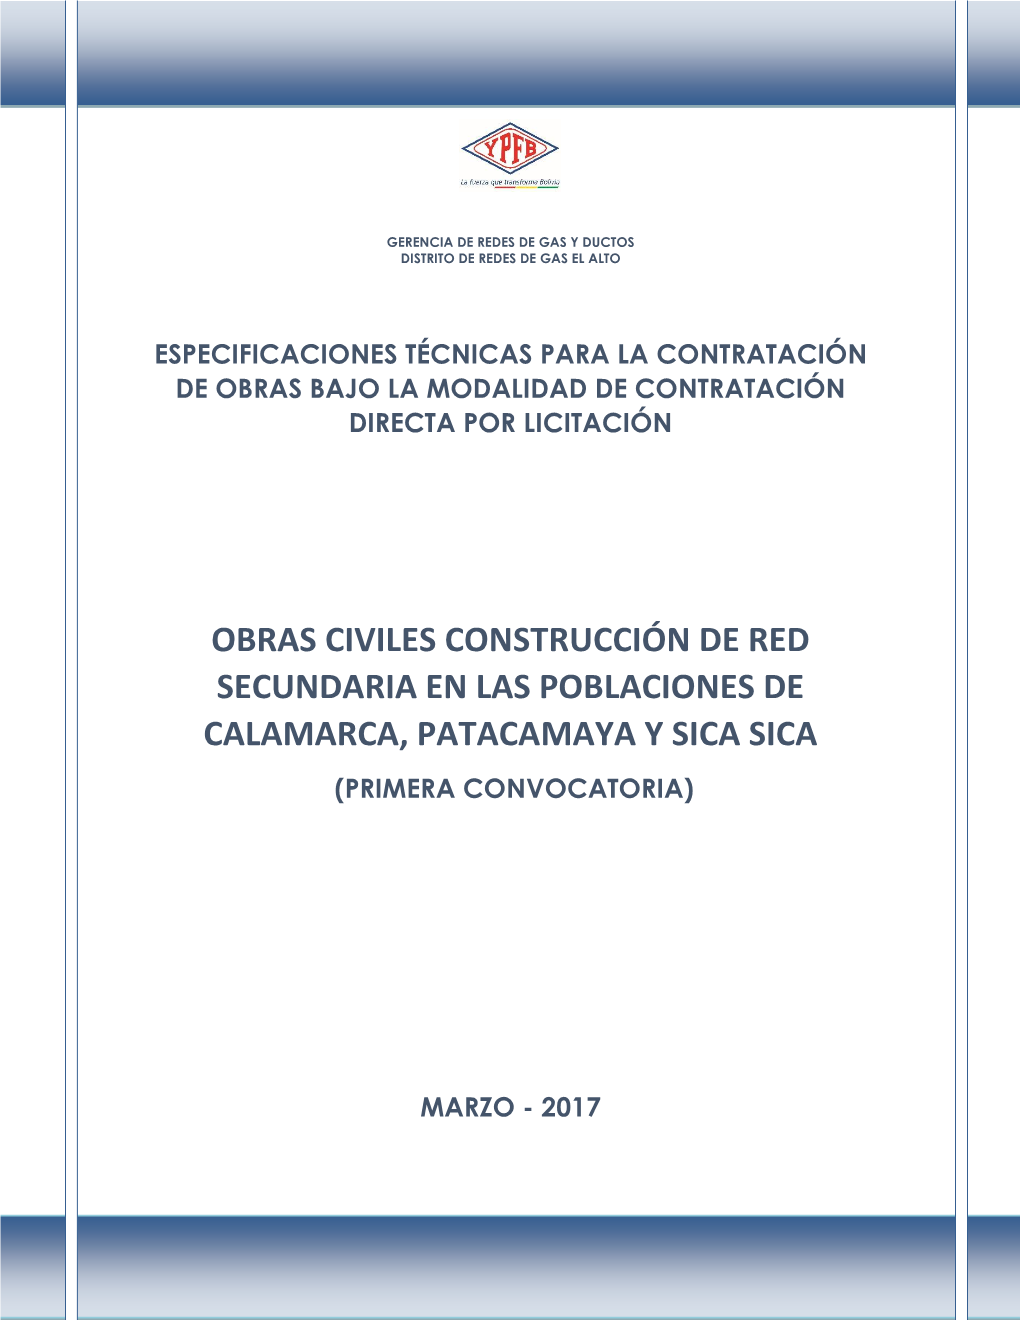 Obras Civiles Construcción De Red Secundaria En Las Poblaciones De Calamarca, Patacamaya Y Sica Sica (Primera Convocatoria)